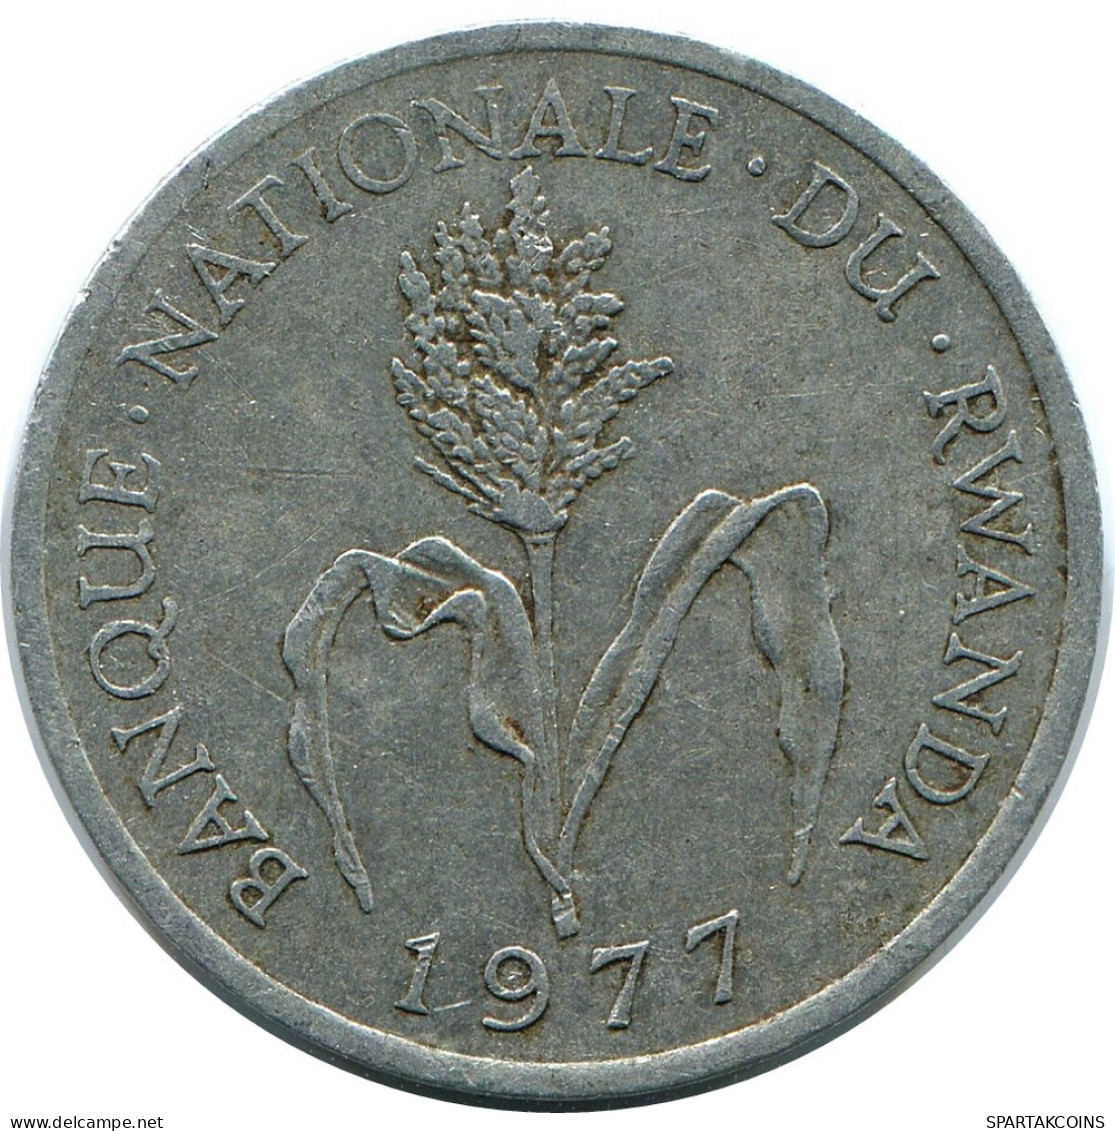 1 FRANC 1977 RWANDA (RUANDA) Coin #AP924.U.A - Rwanda